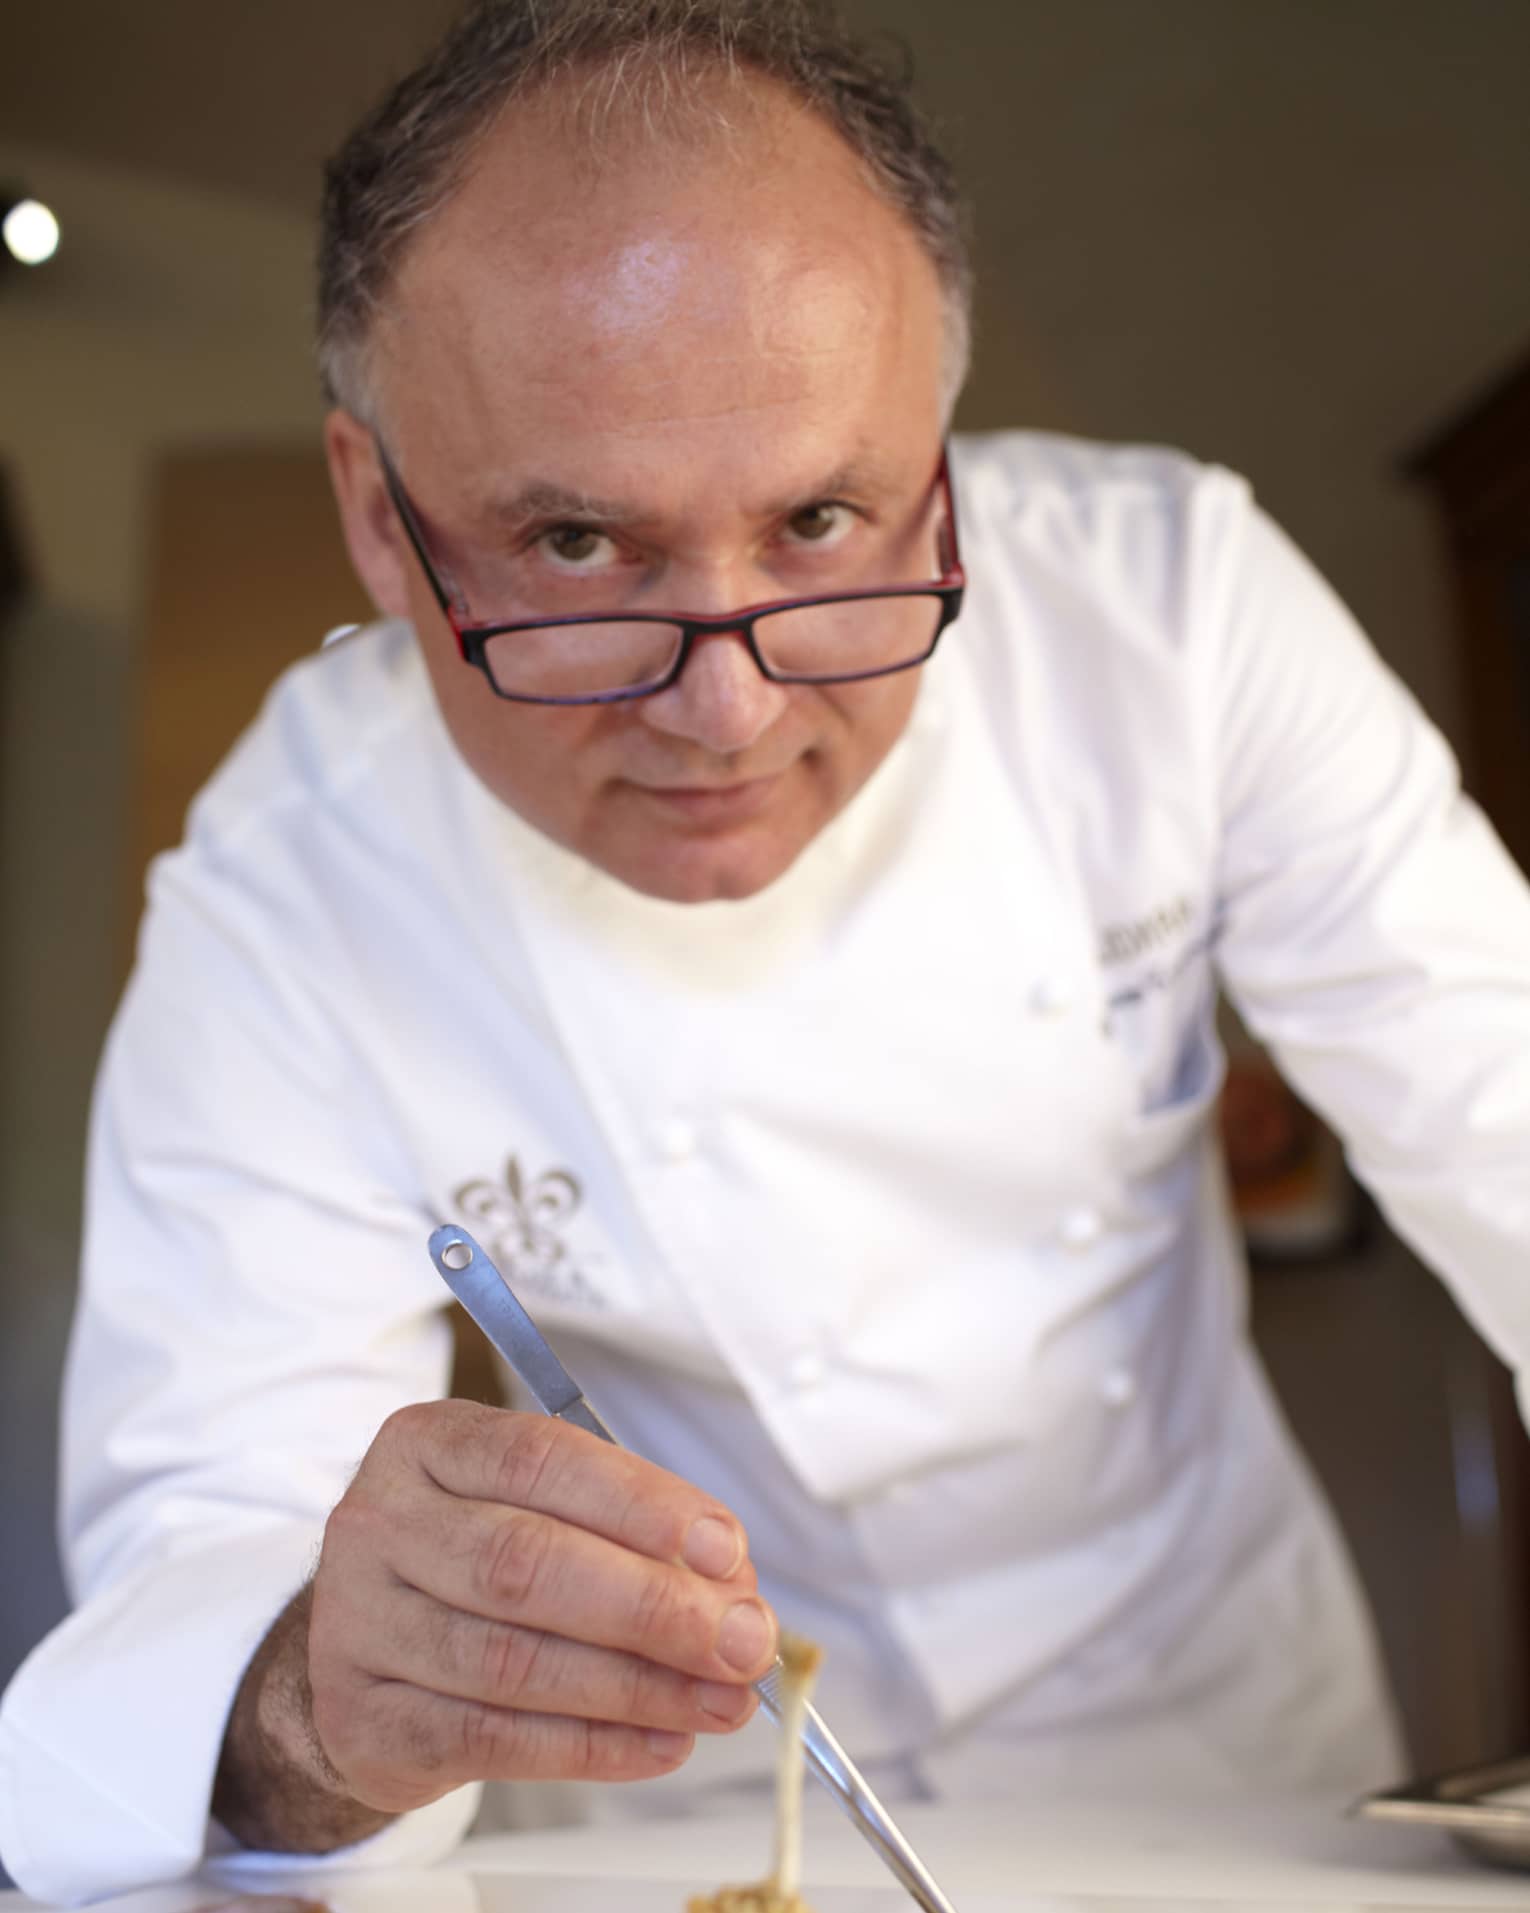 Michlelin-starred Chef Gaetano Trovato